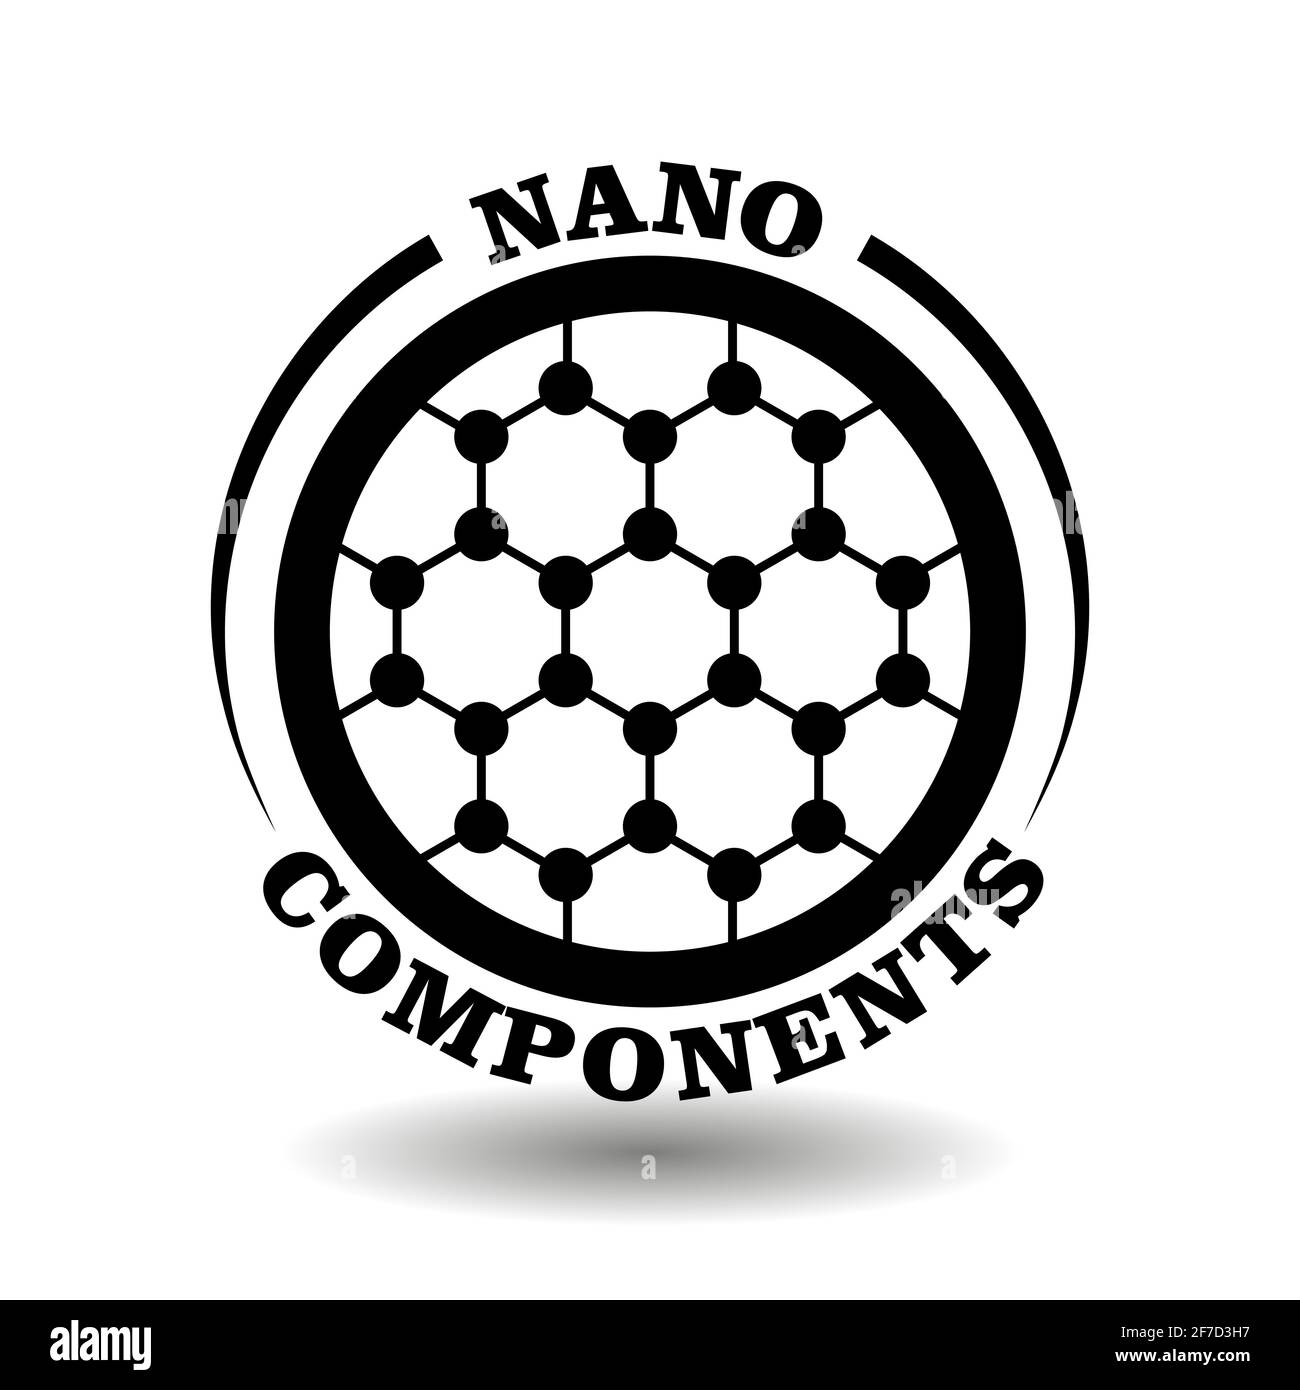 Logo rond créatif des composantes de la nanotechnologie pour l'étiquetage des produits de la nano science moderne, avec symbole de formule chimique abstraite en cercle Illustration de Vecteur